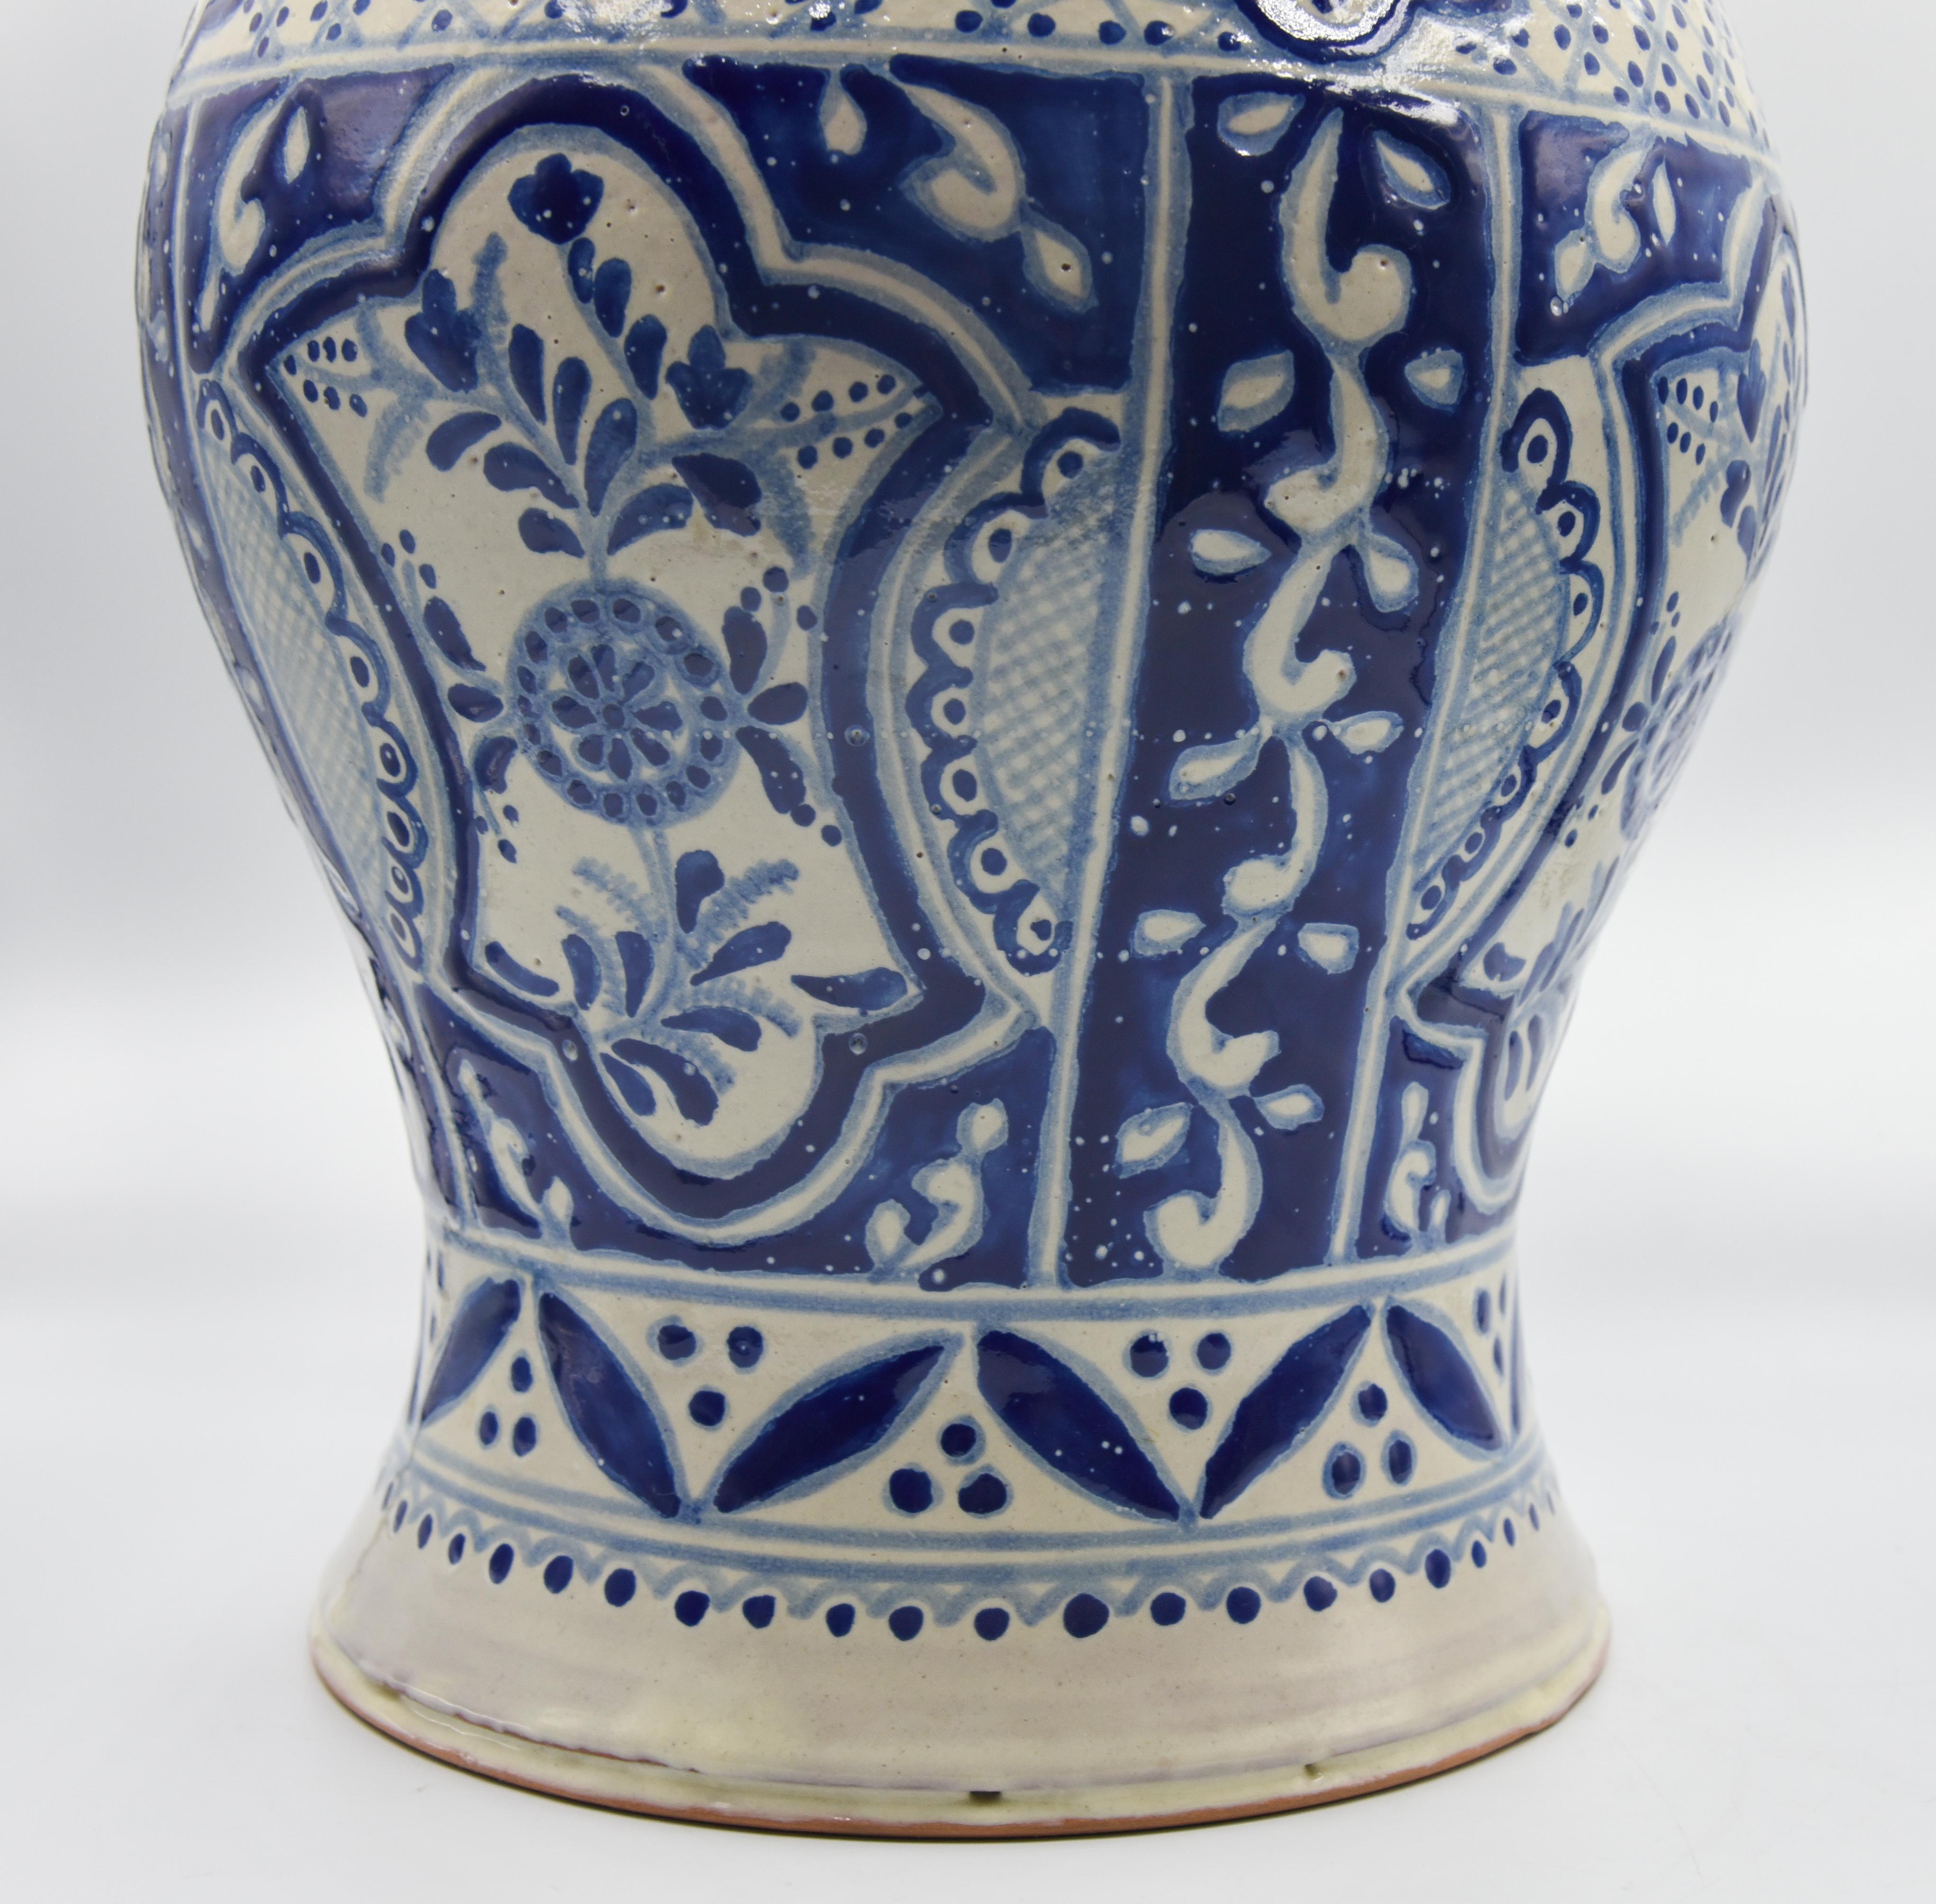 Contemporary Authentic Talavera Decorative Vase Folk Art Vessel Mexican Ceramic Blue White